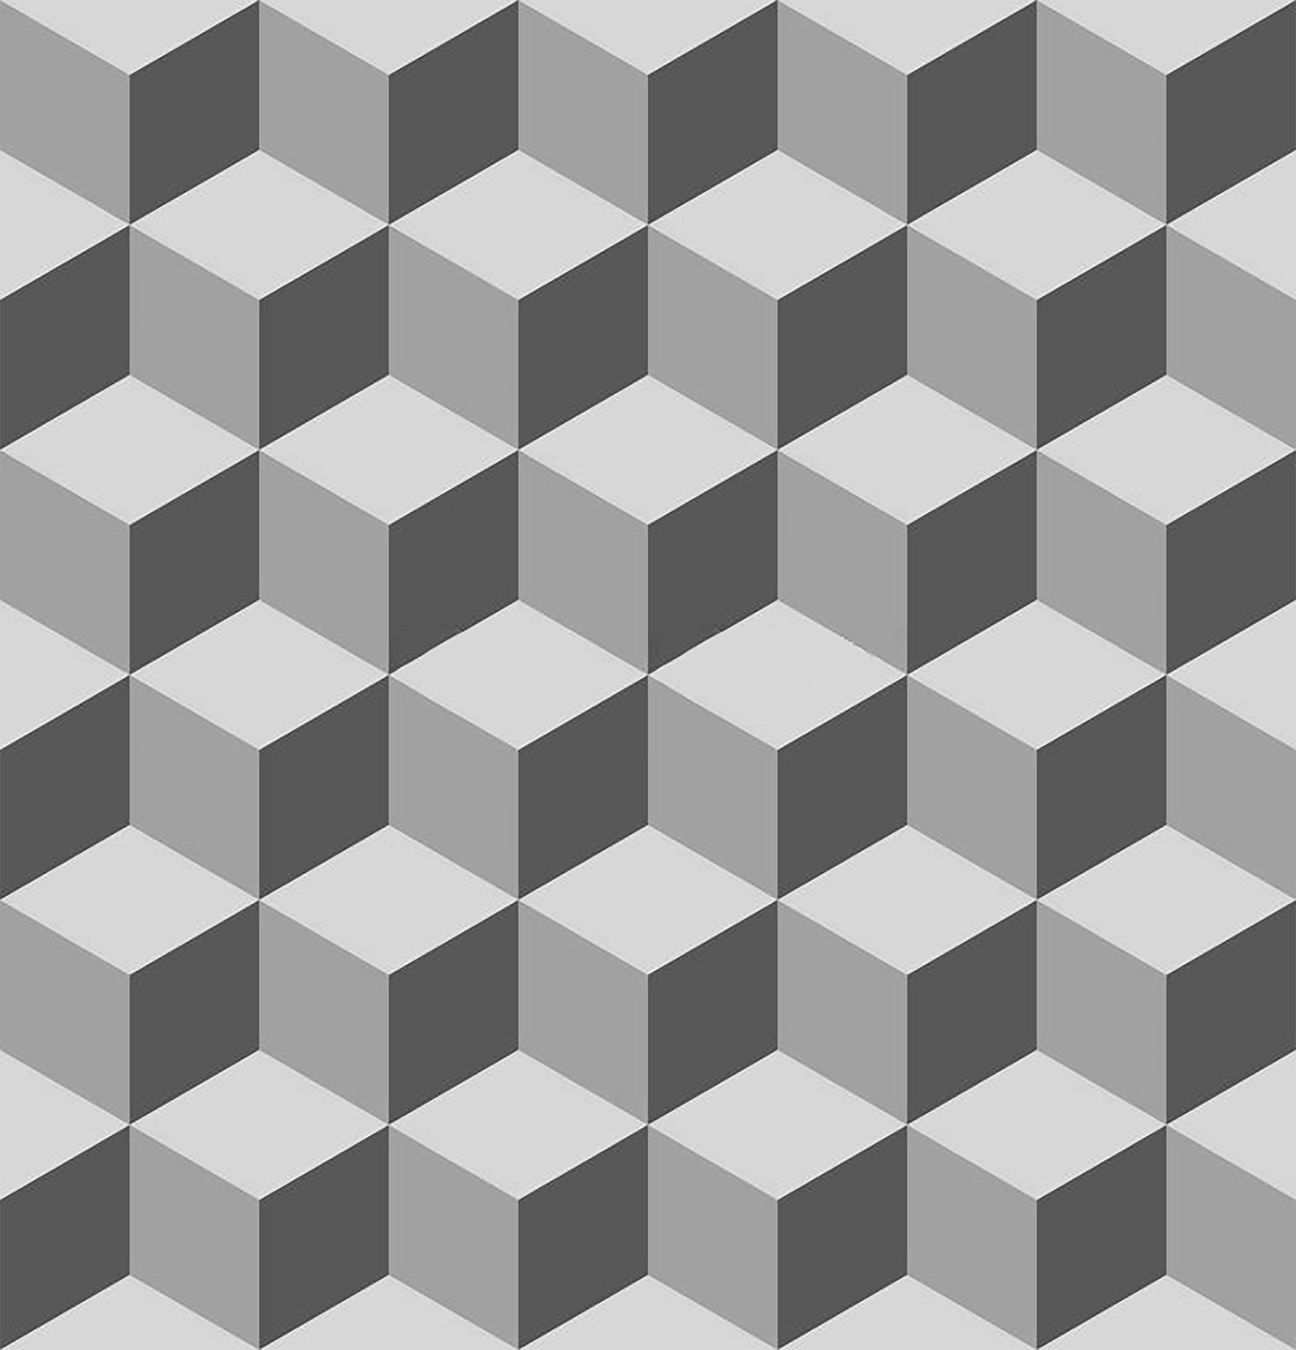 Escher cubes